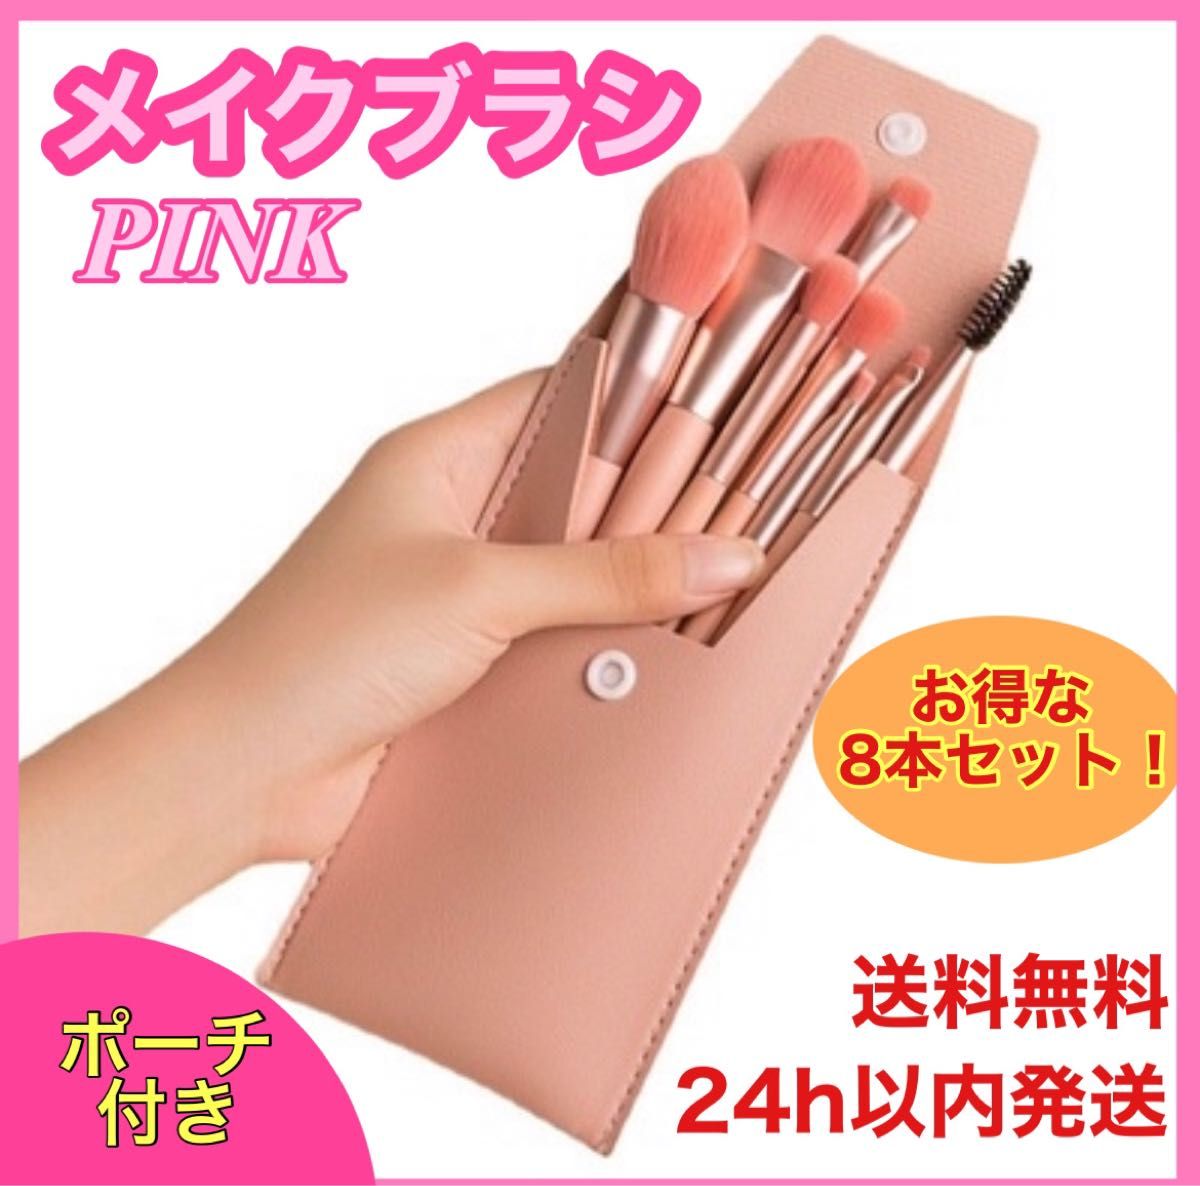 メイクブラシ 8本セット ポーチ付き アイメイク フェイス ブラシ 韓国 ピンク